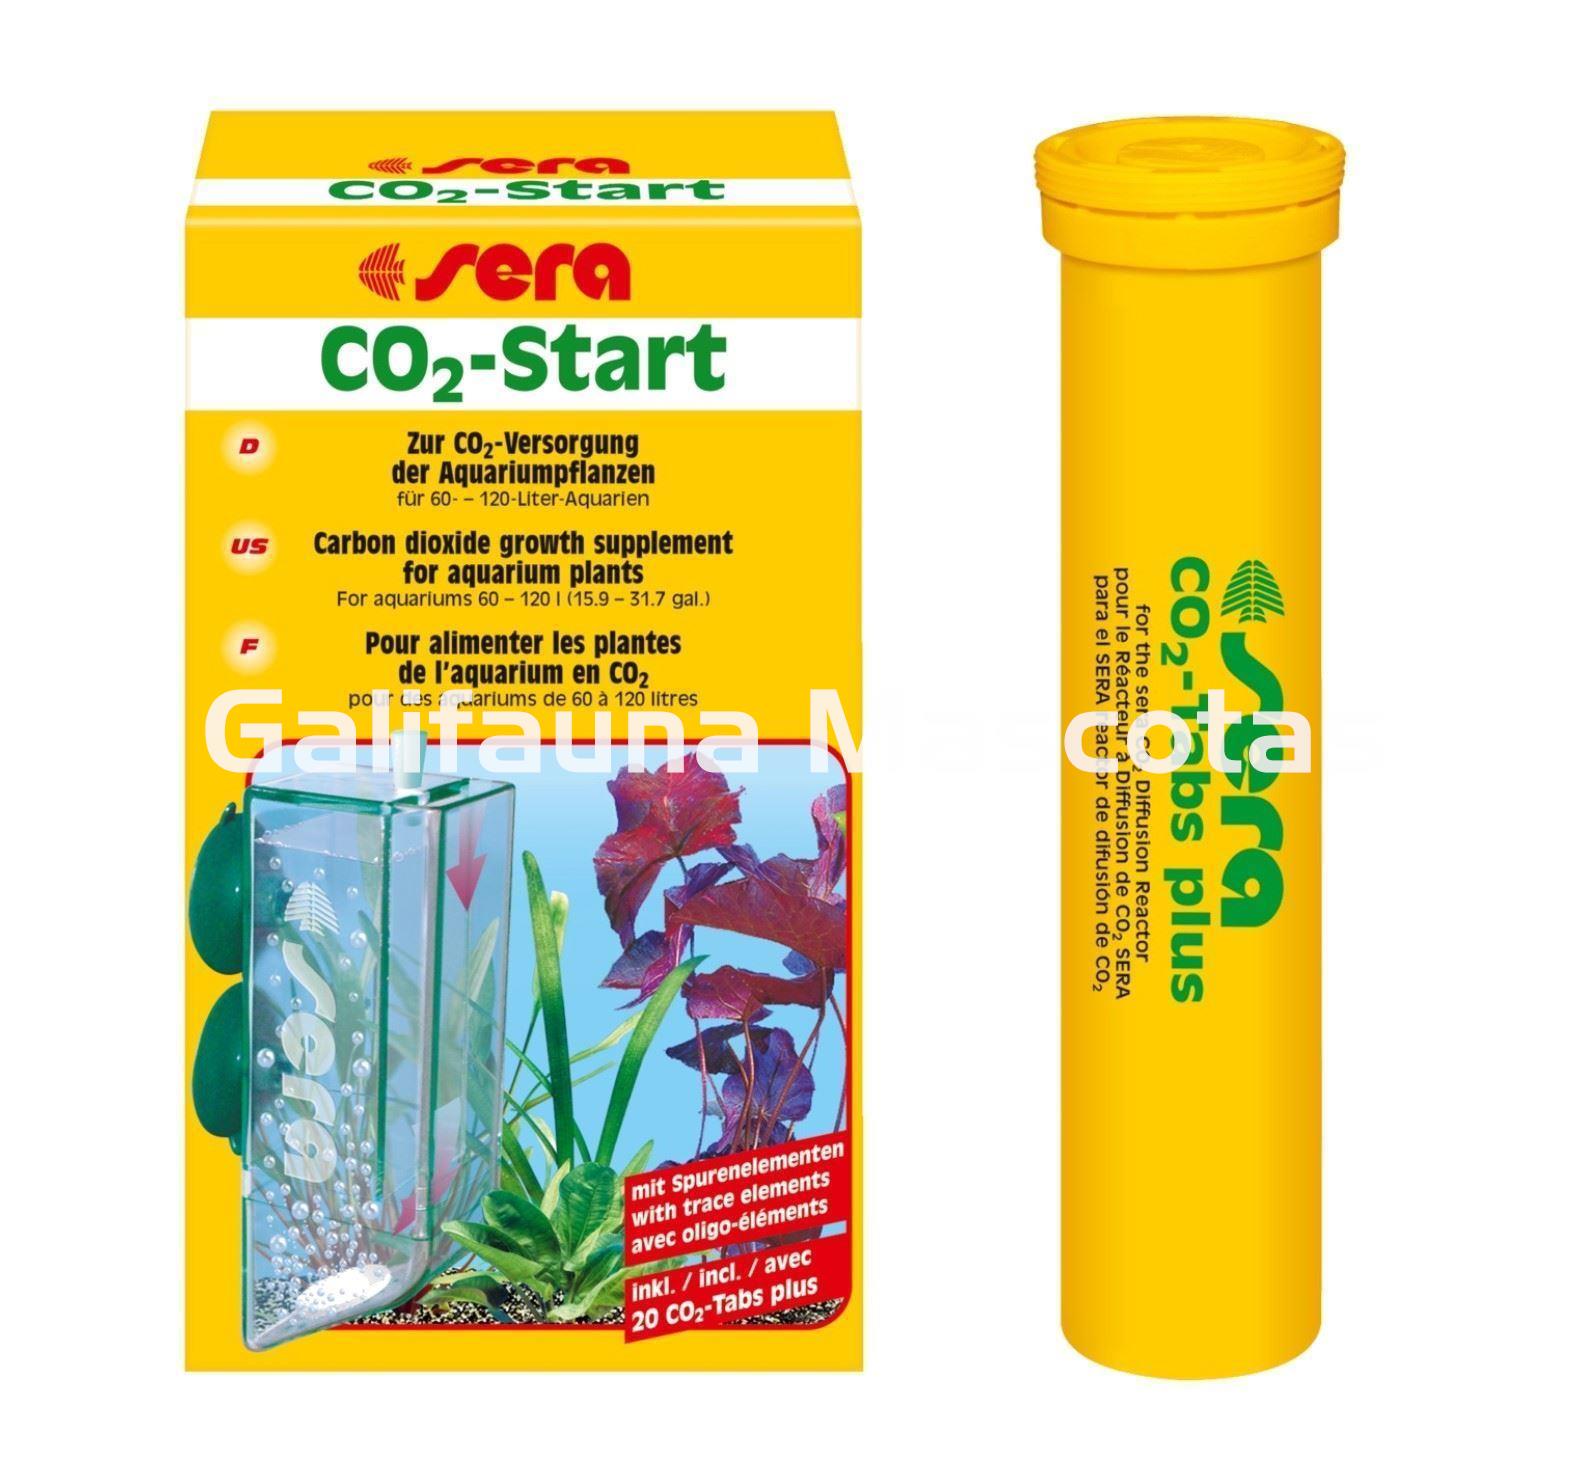 SISTEMA de CO2 en Pastillas para acuario. Tabletas de CO2 - Imagen 1